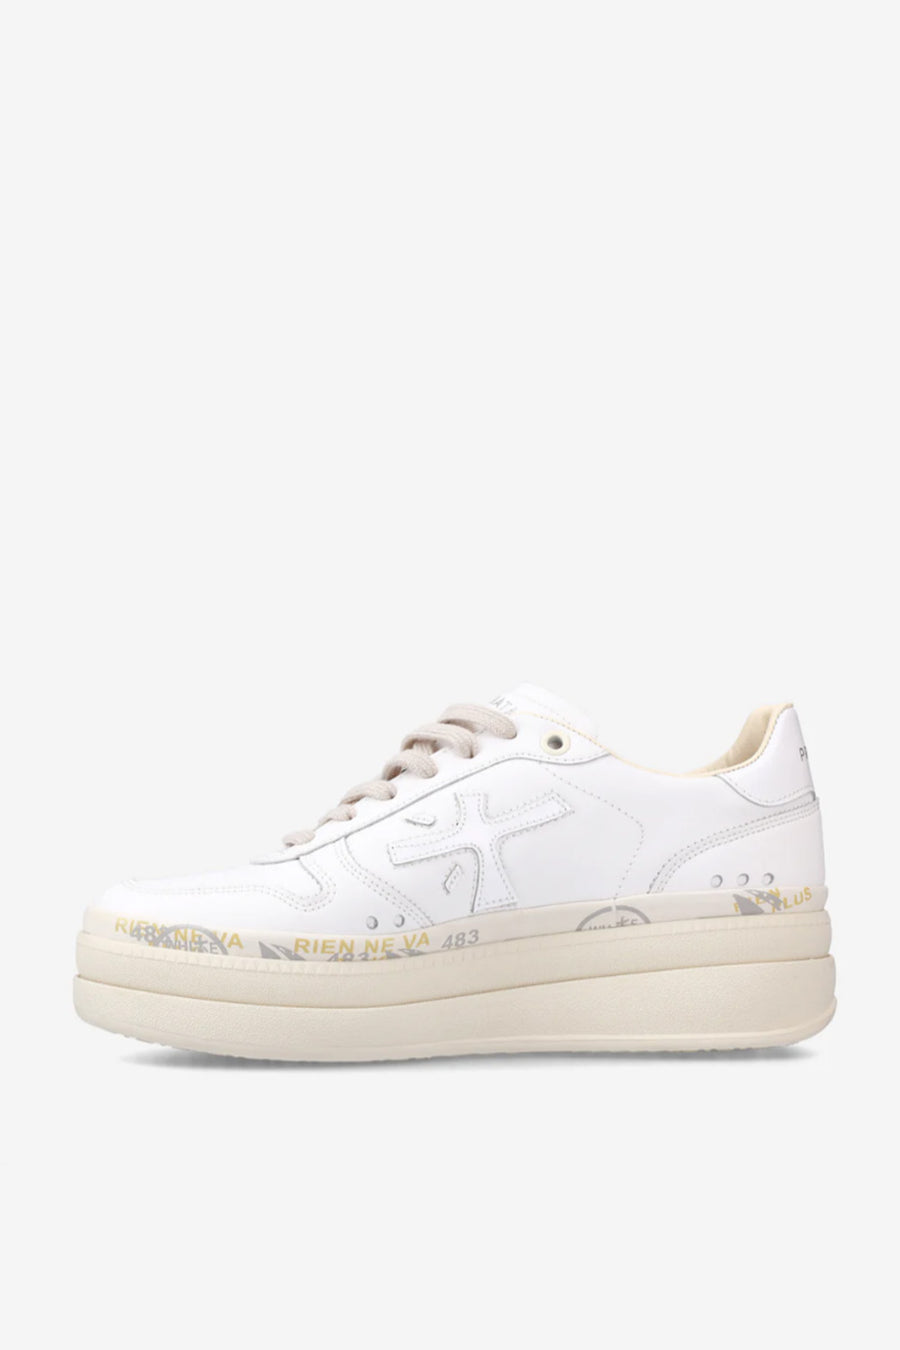 Sneakers Premiata bianco micol 6788